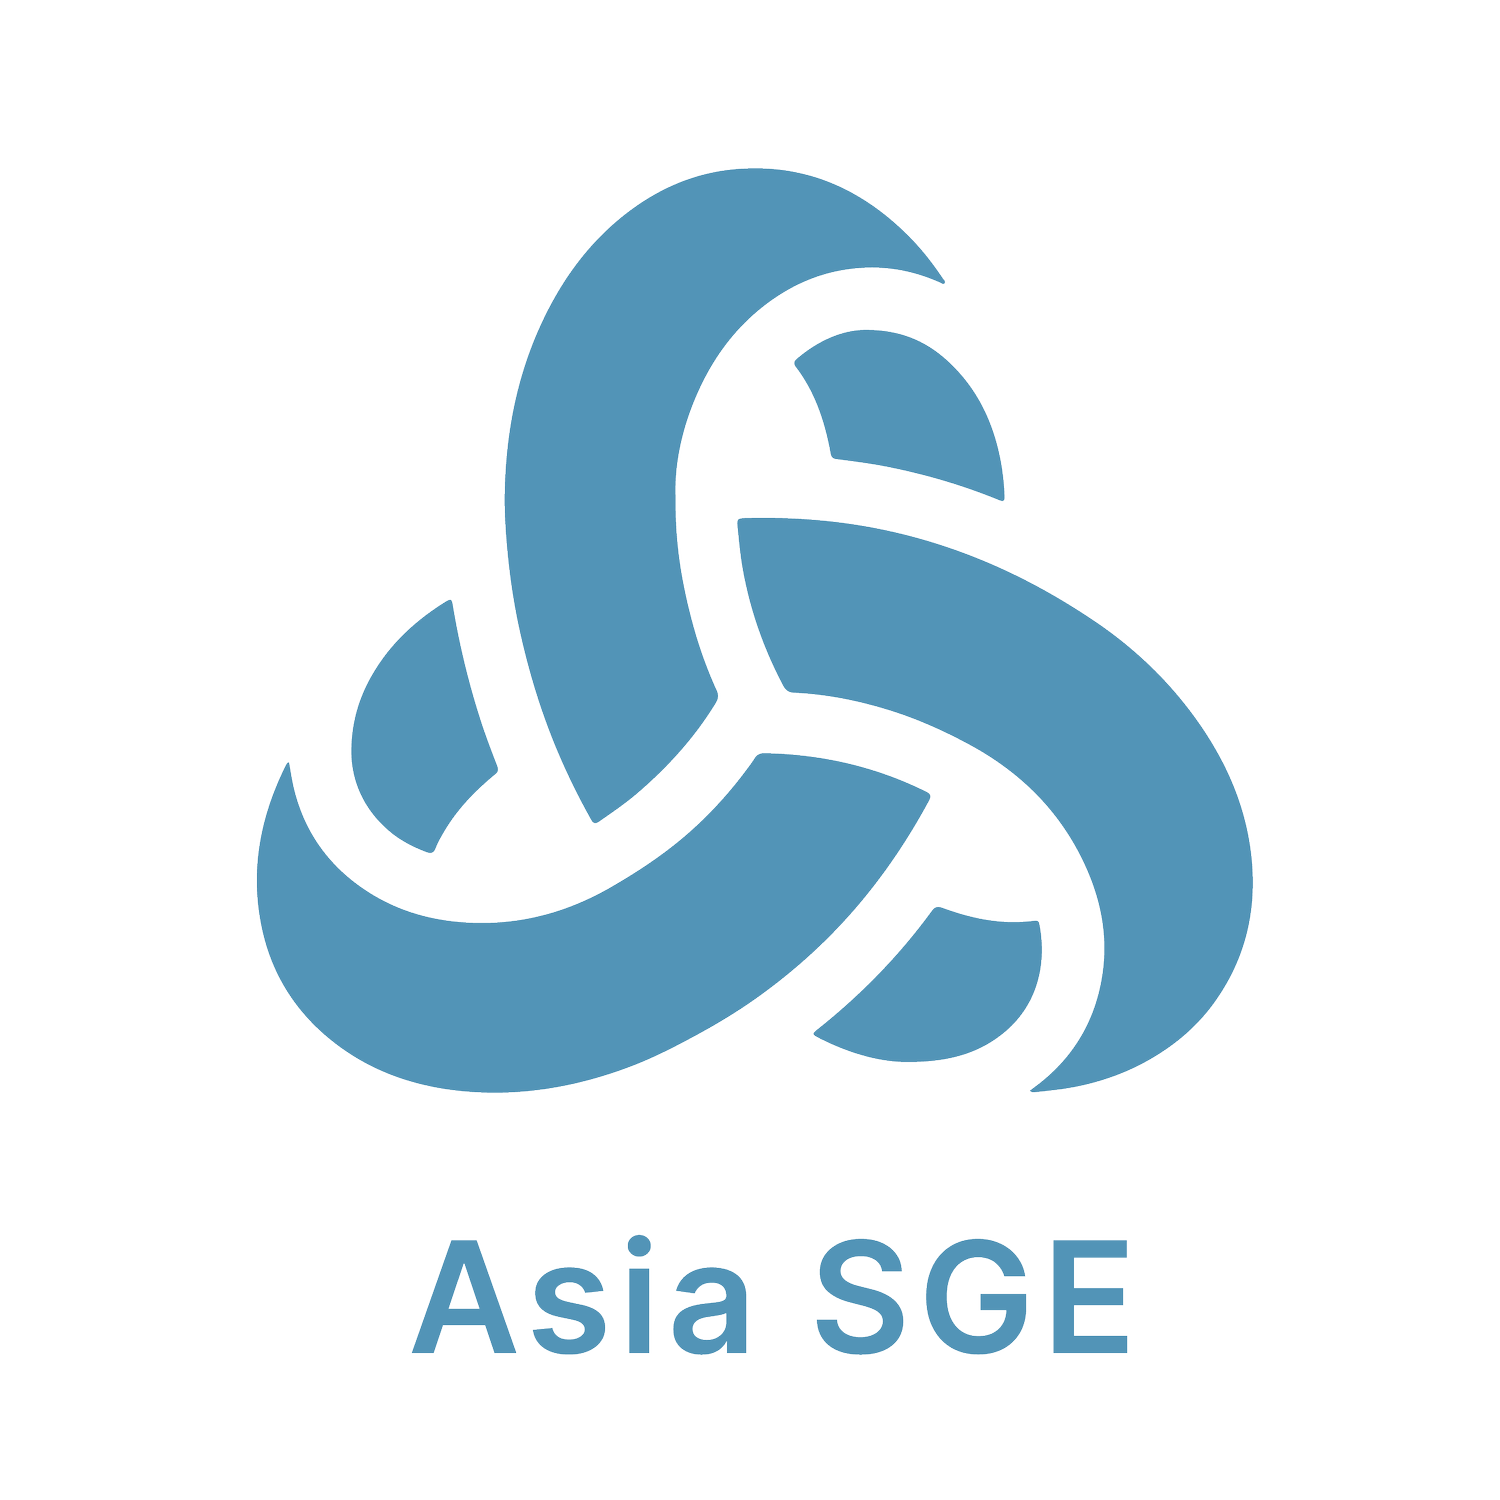 Asia SGE